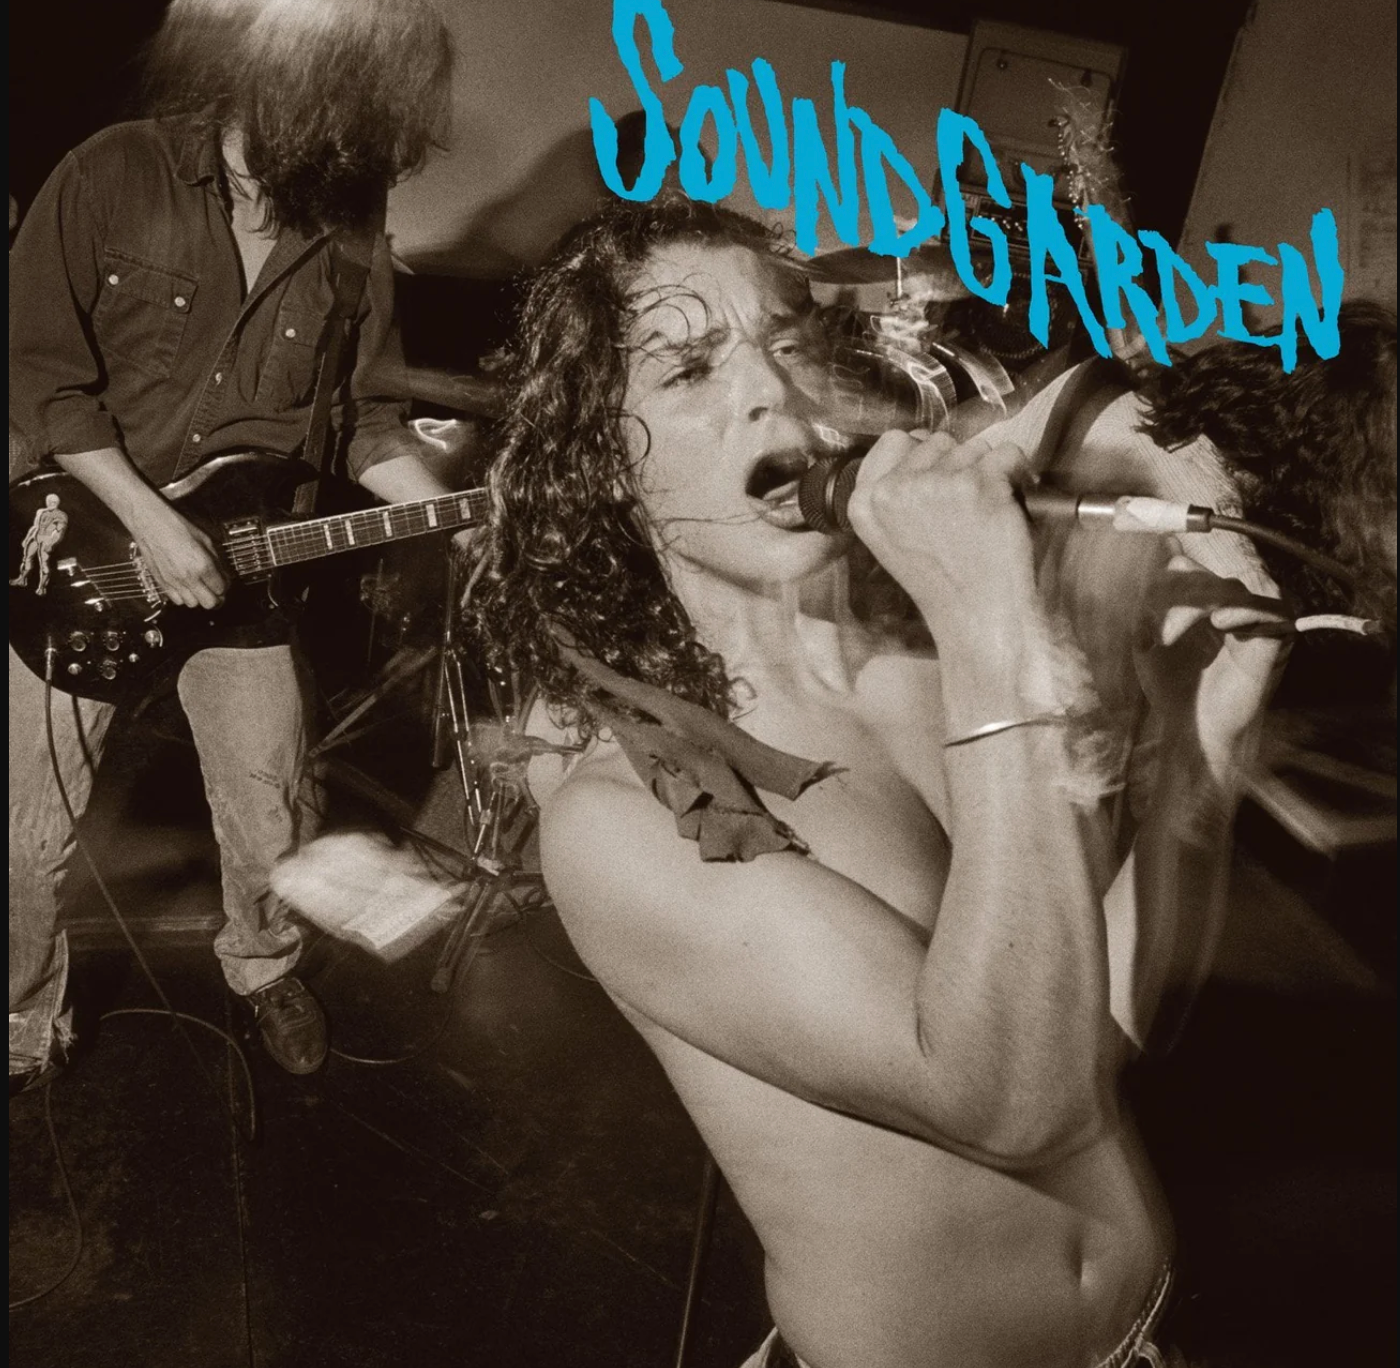 Soundgarden - Screaming Life